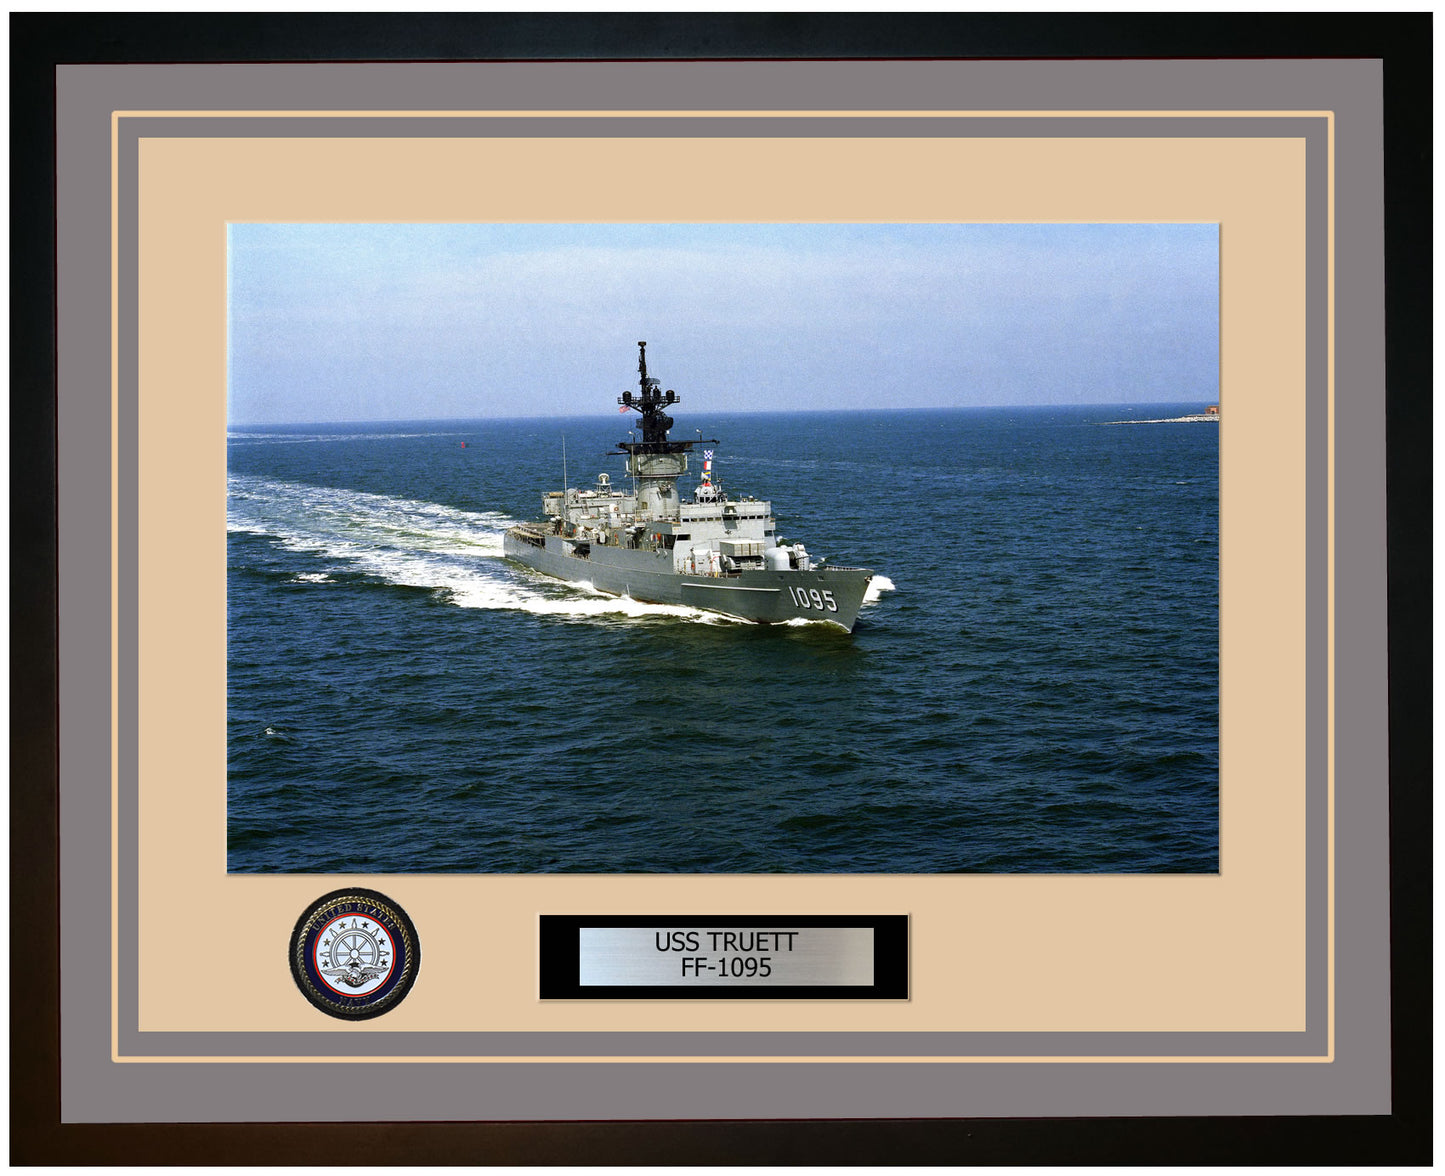 USS TRUETT FF-1095 Framed Navy Ship Photo Grey